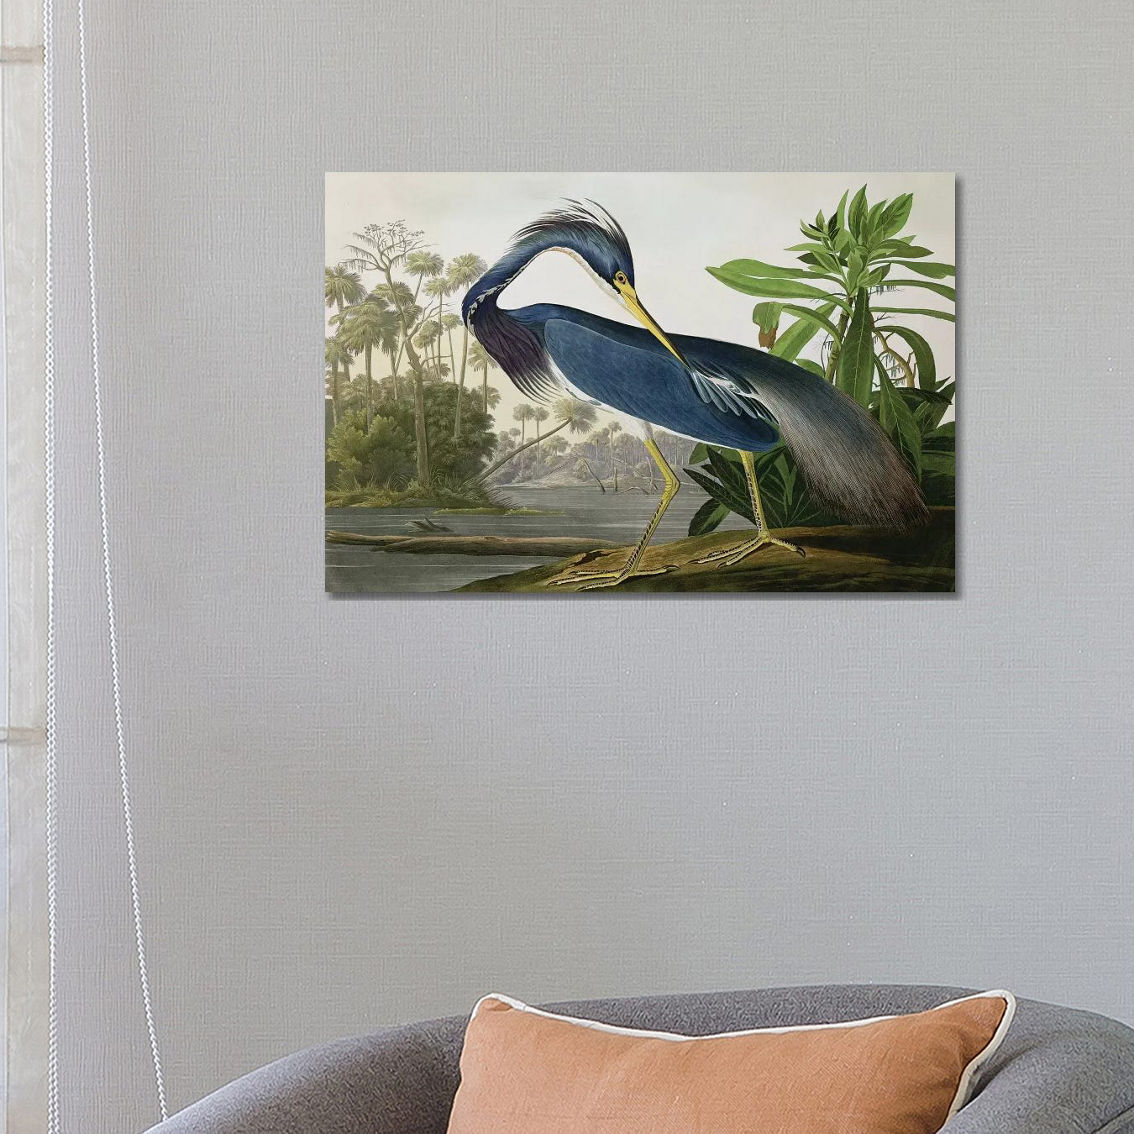 Louisiana Heron Coastal Birds Stylish Art by John James Audubon - Large Art - Image 2 of 2